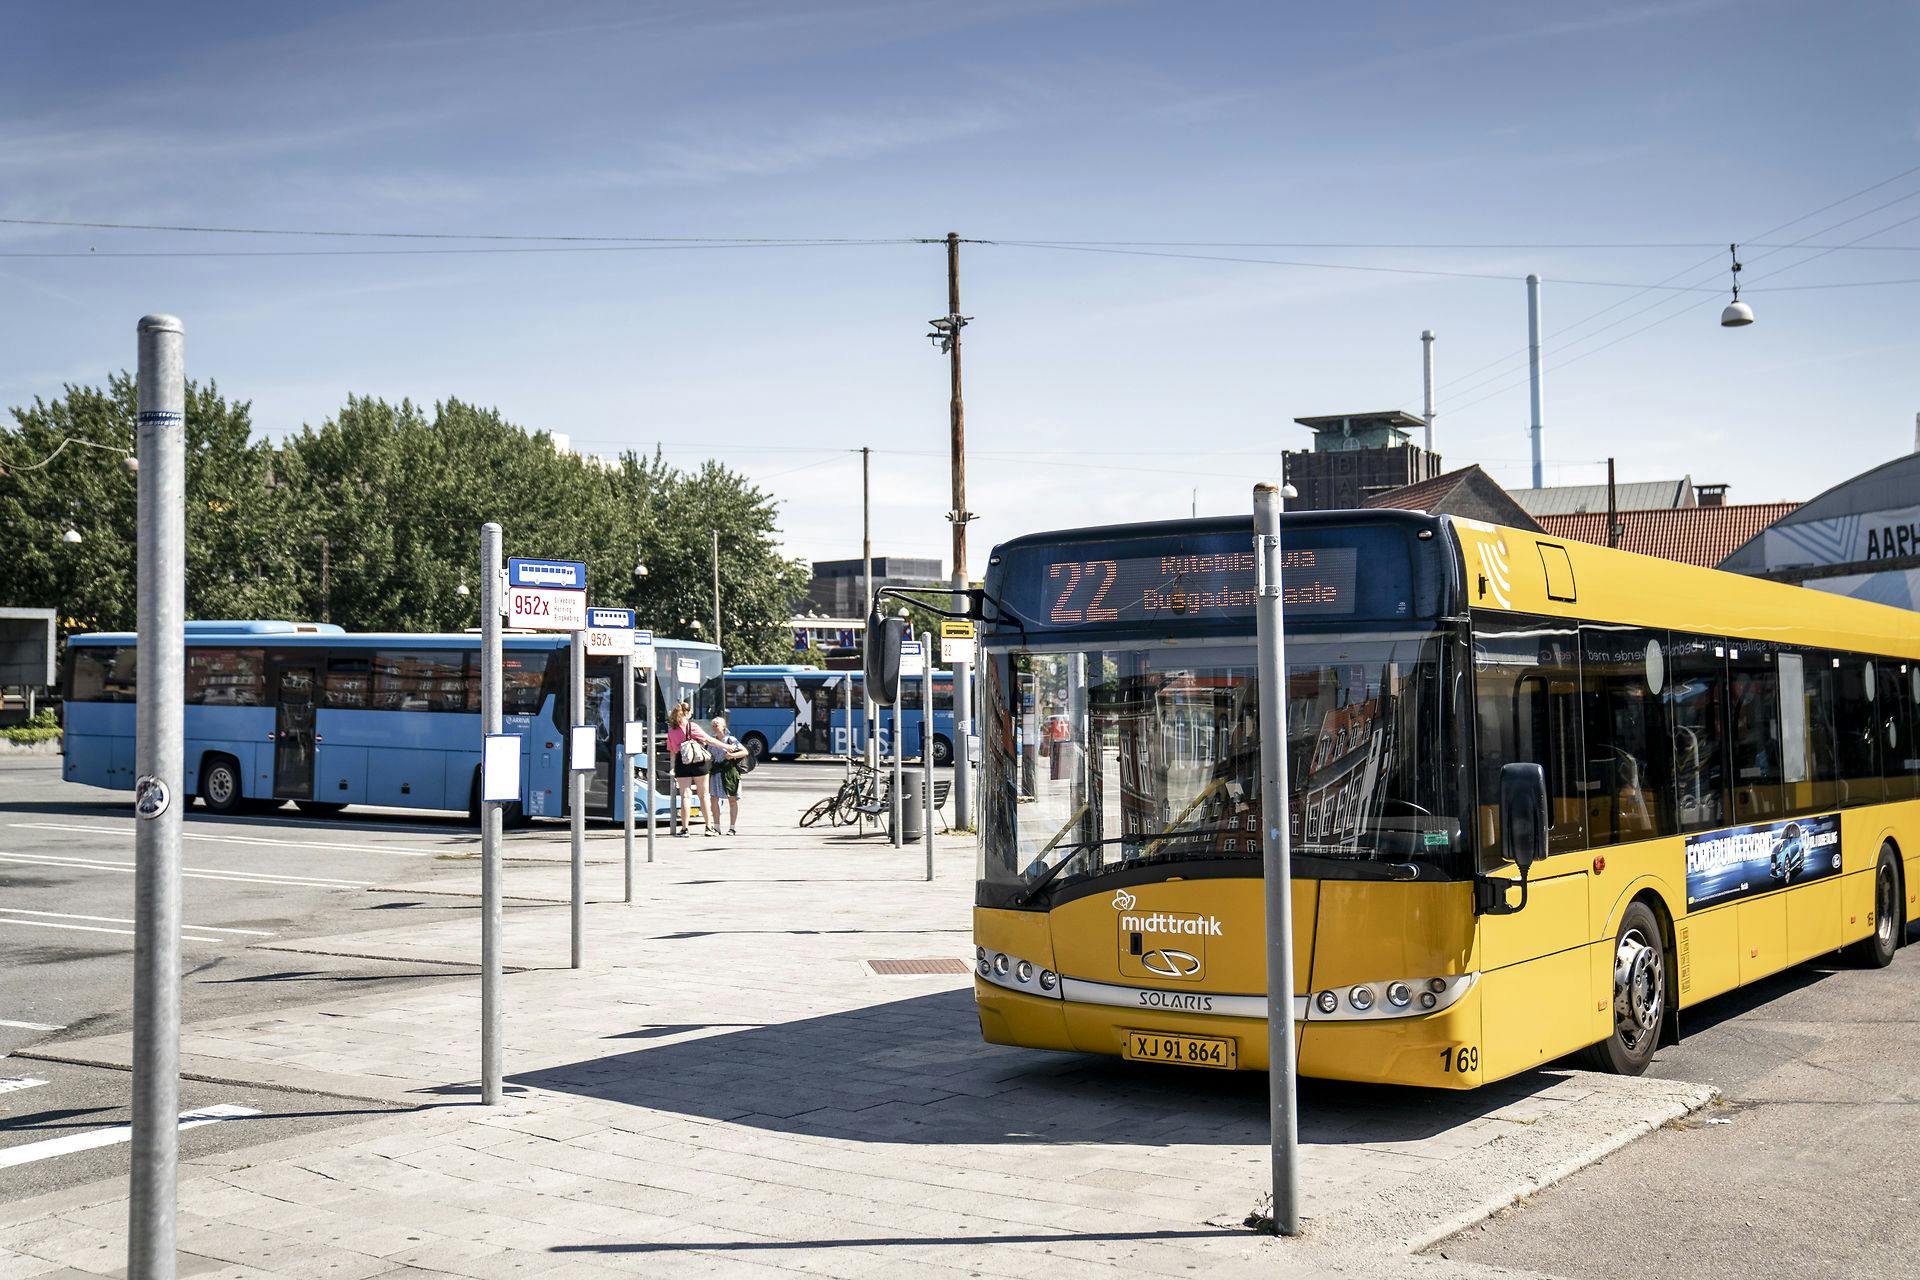 Busser i Aarhus, som her på billedet, skal være gratis. Det mener Lean Milo fra Moderaterne, der foreslår at gøre den offentlige transport i de større danske byer gratis. nbsp;